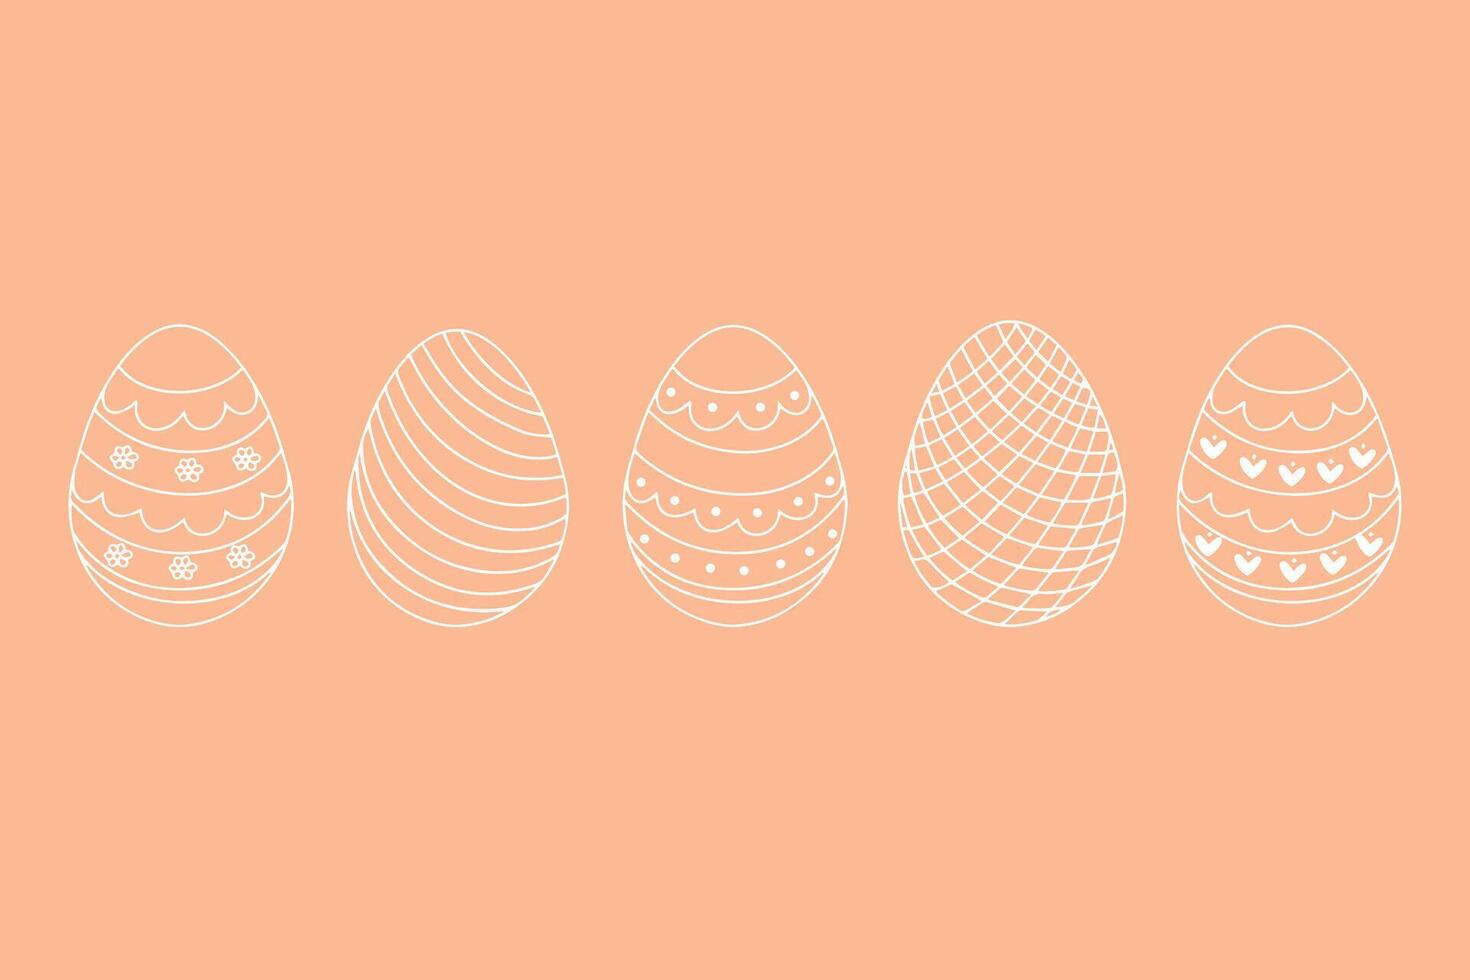 Vektor Sammlung von Ostern Eier Vektoren im Gekritzel style.icons von Weiß Eier mit Ornament zum Ostern Ferien Dekoration. Hand gezeichnet Vektor Illustration auf Pfirsich Hintergrund. Vektor